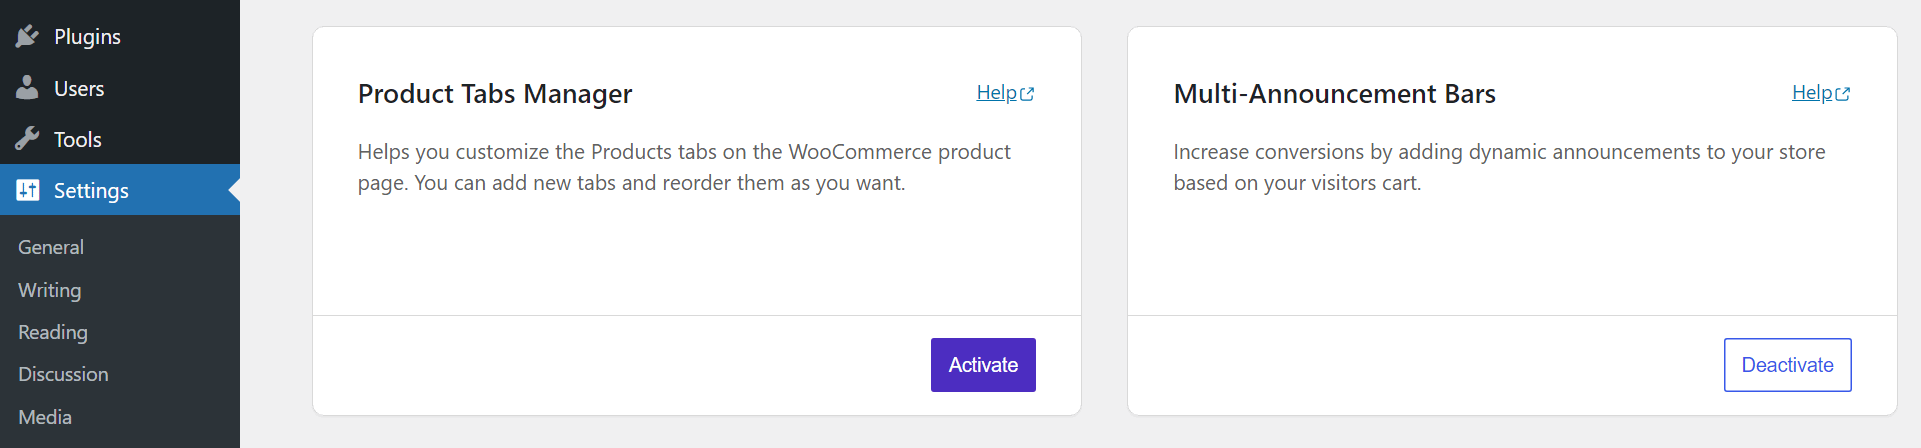 مدیر تب محصول را در تنظیمات Sparks WooCommerce فعال کنید.